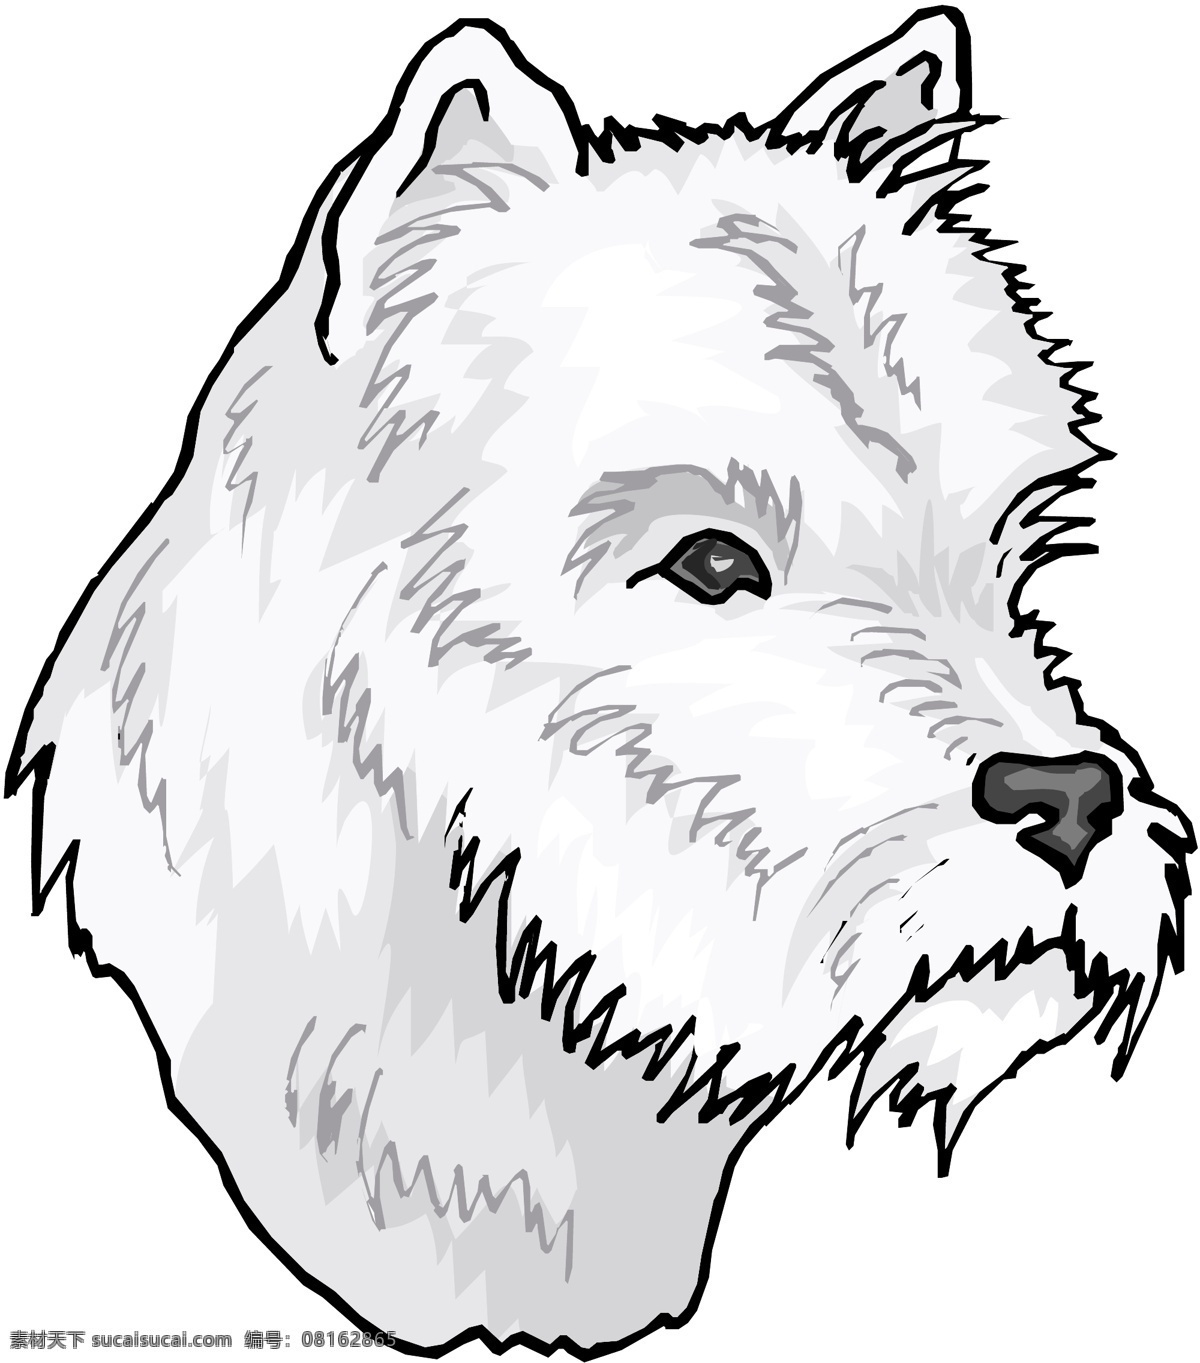 宠物狗 矢量素材 格式 eps格式 设计素材 宠物世界 矢量动物 矢量图库 白色